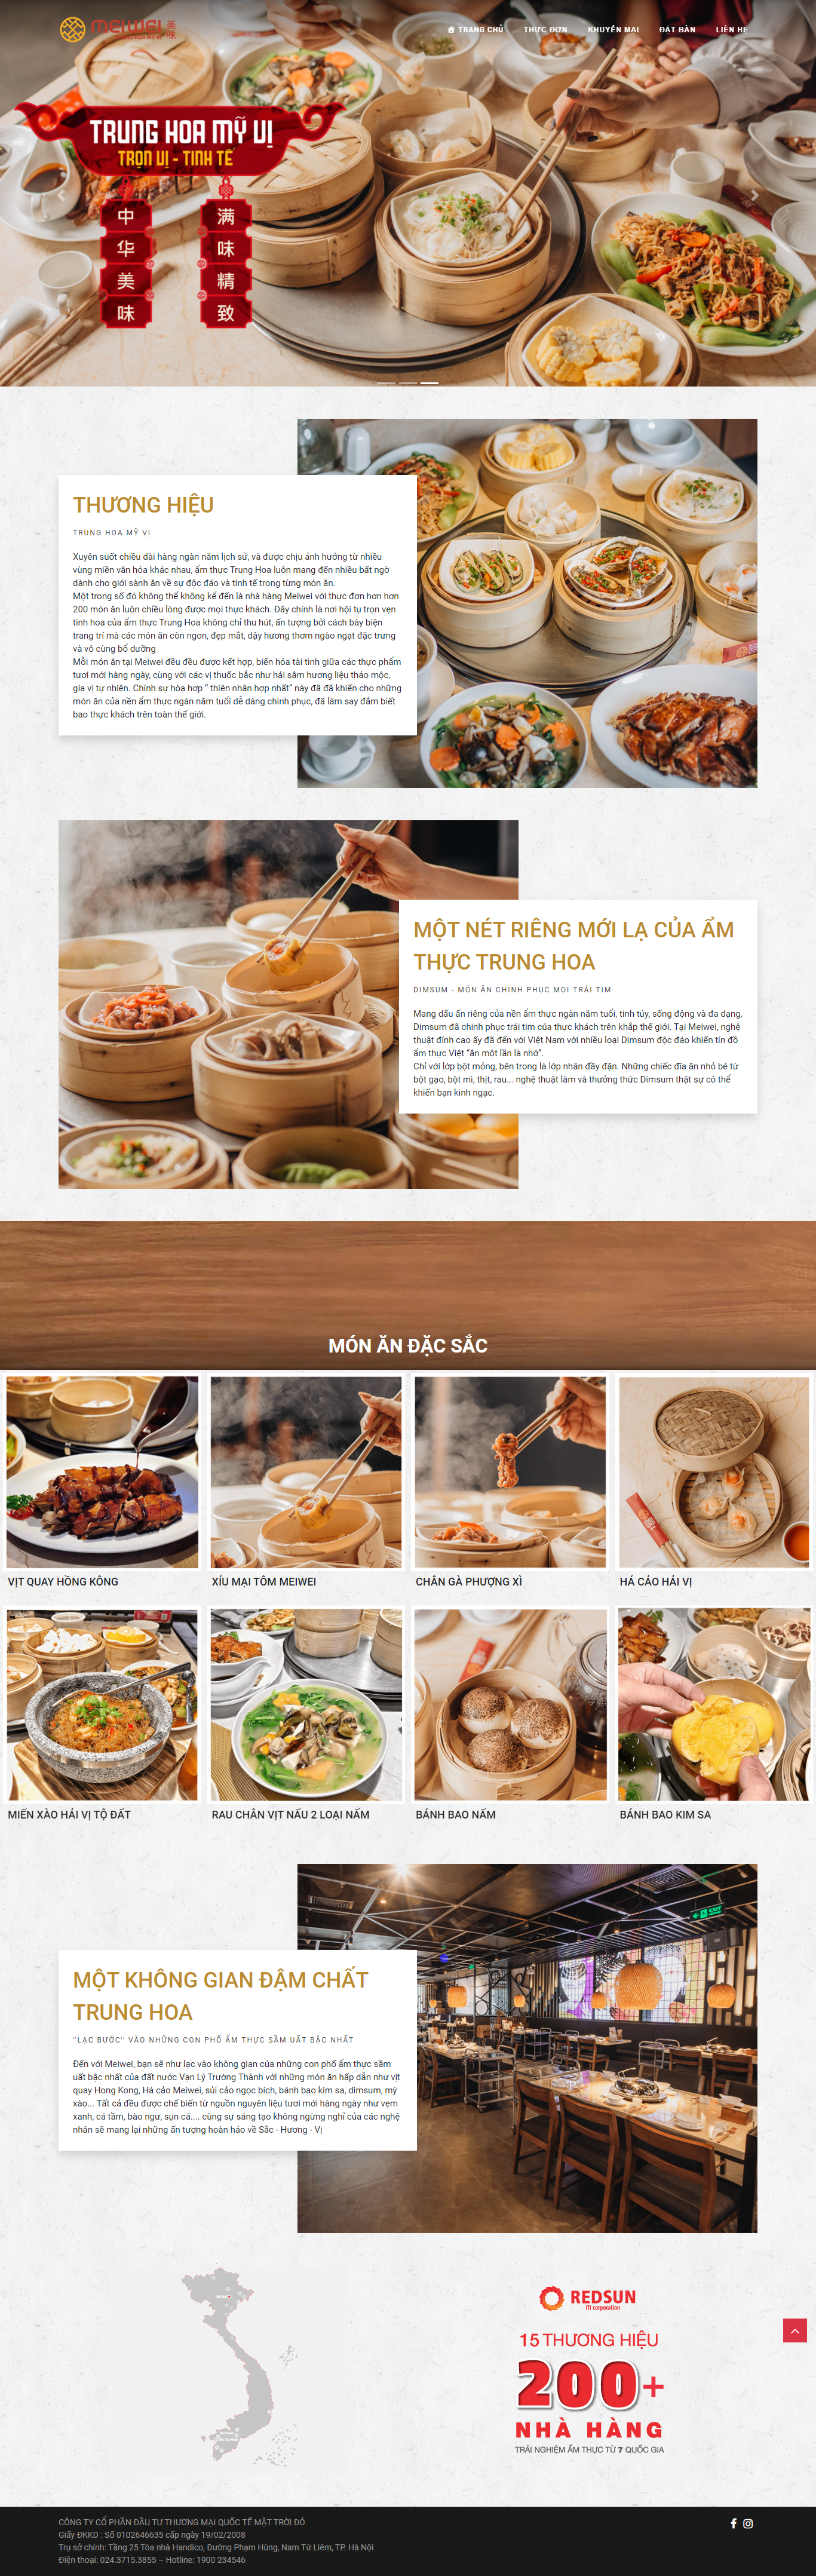 Mẫu website nhà hàng Trung Hoa Meiwei